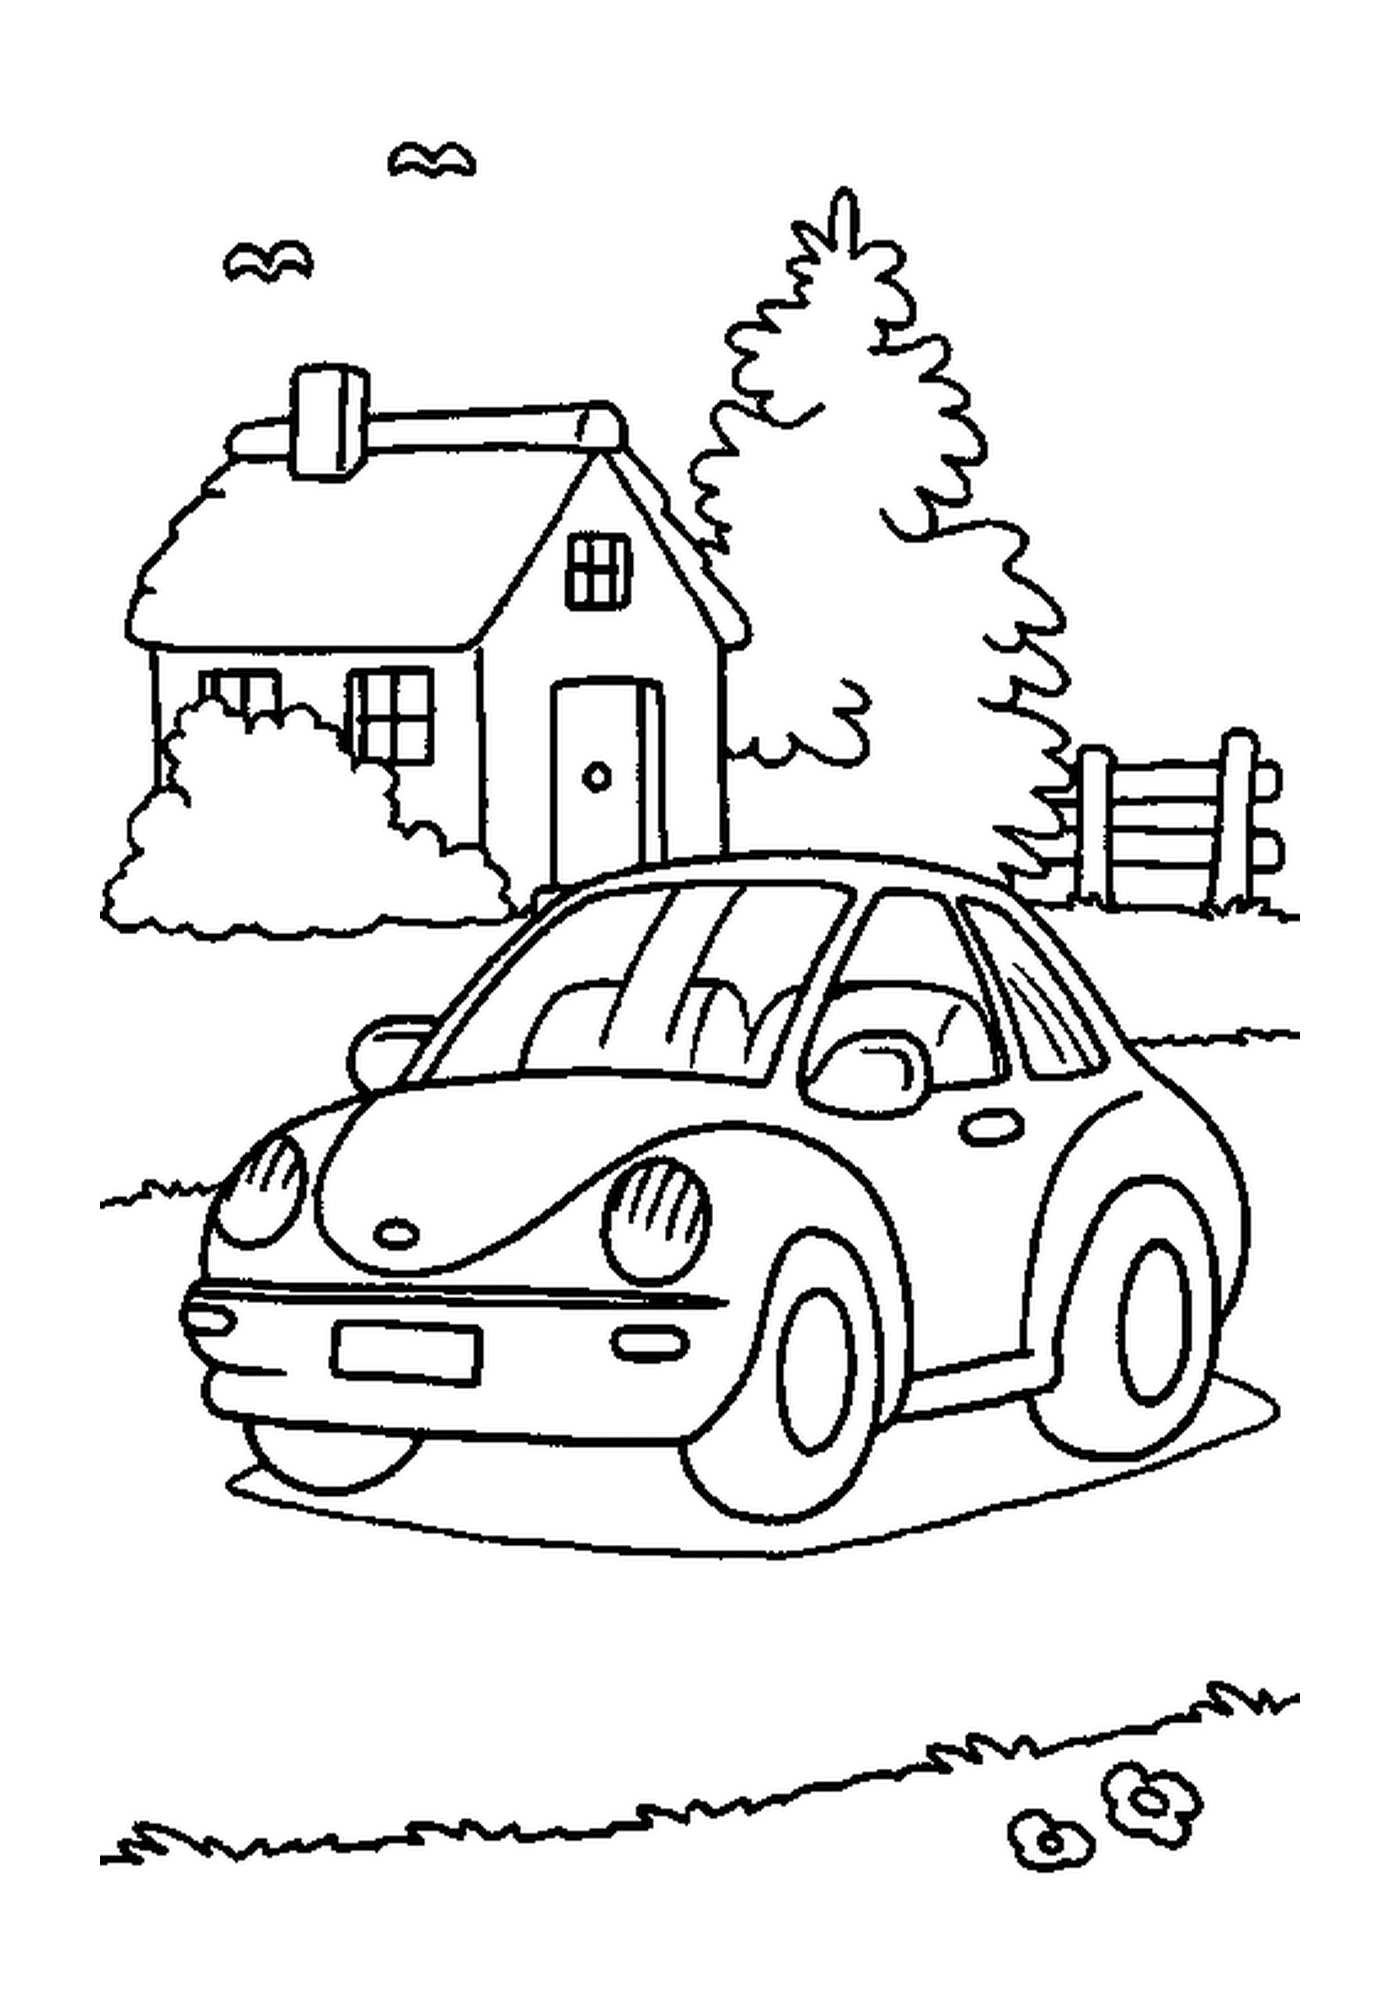  Casa com carro 